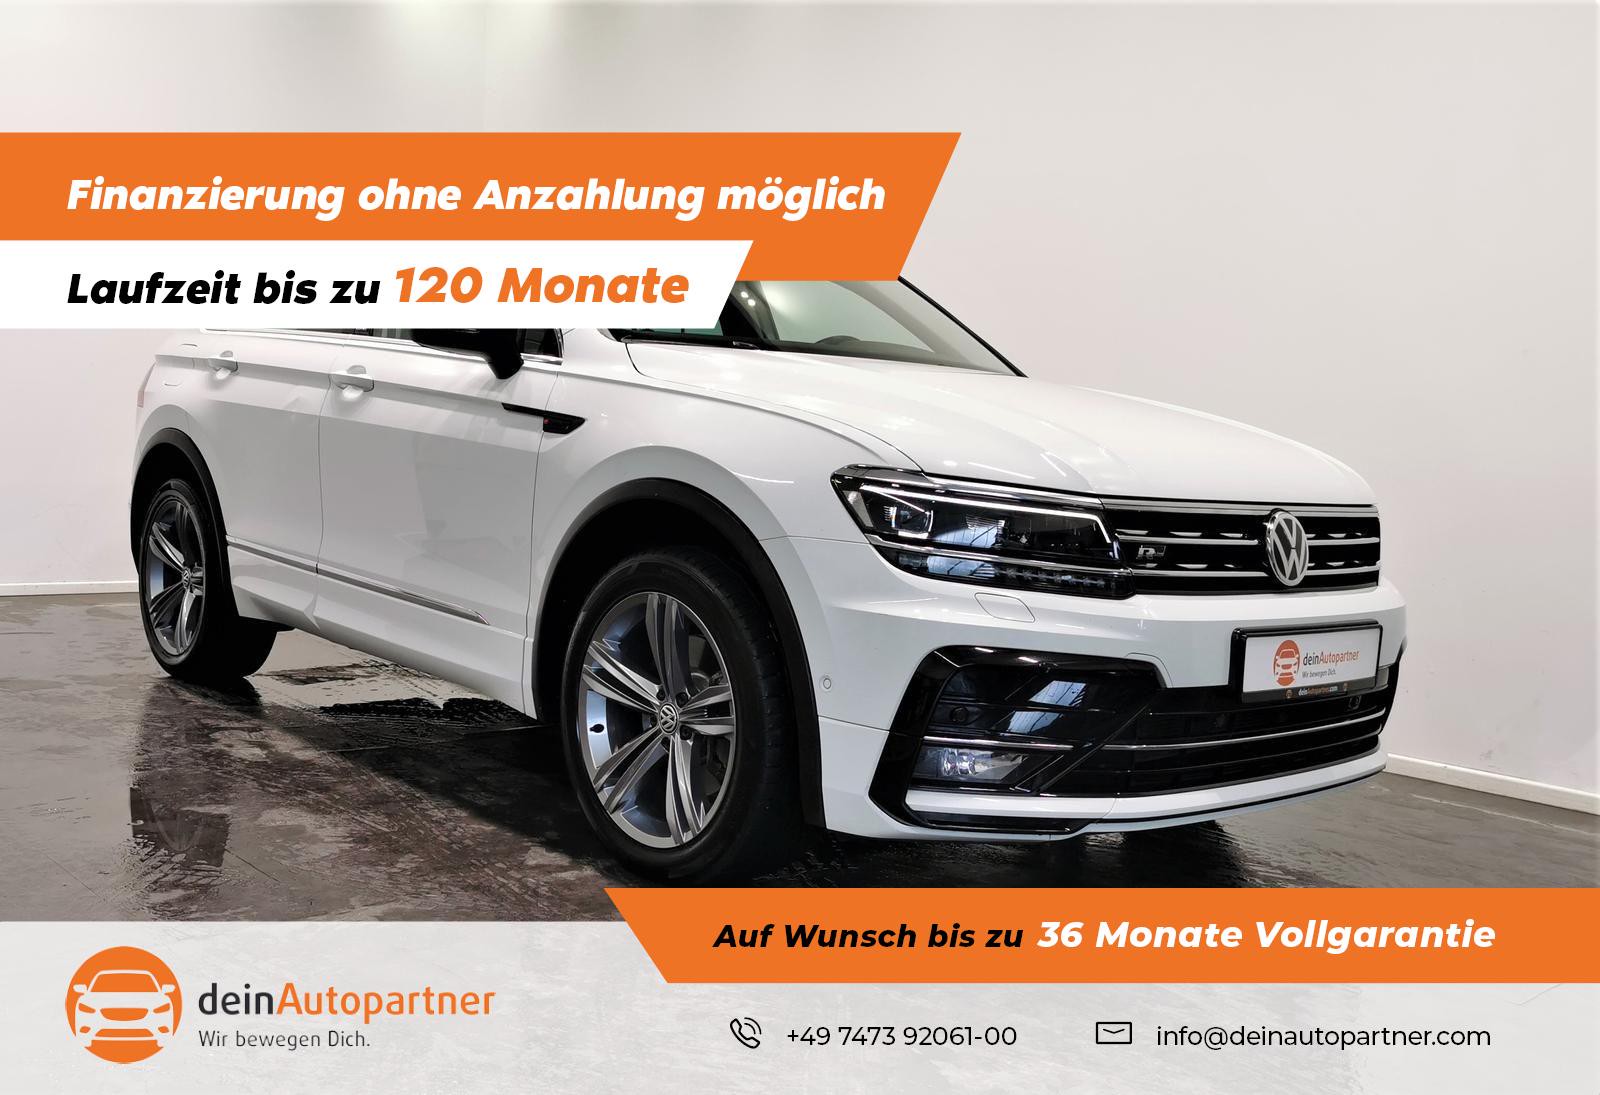 Volkswagen Tiguan 2.0 TDI IQ Dr. 4M R Line AHK gebraucht kaufen in  Mössingen Preis 23750 eur - Int.Nr.: 395202